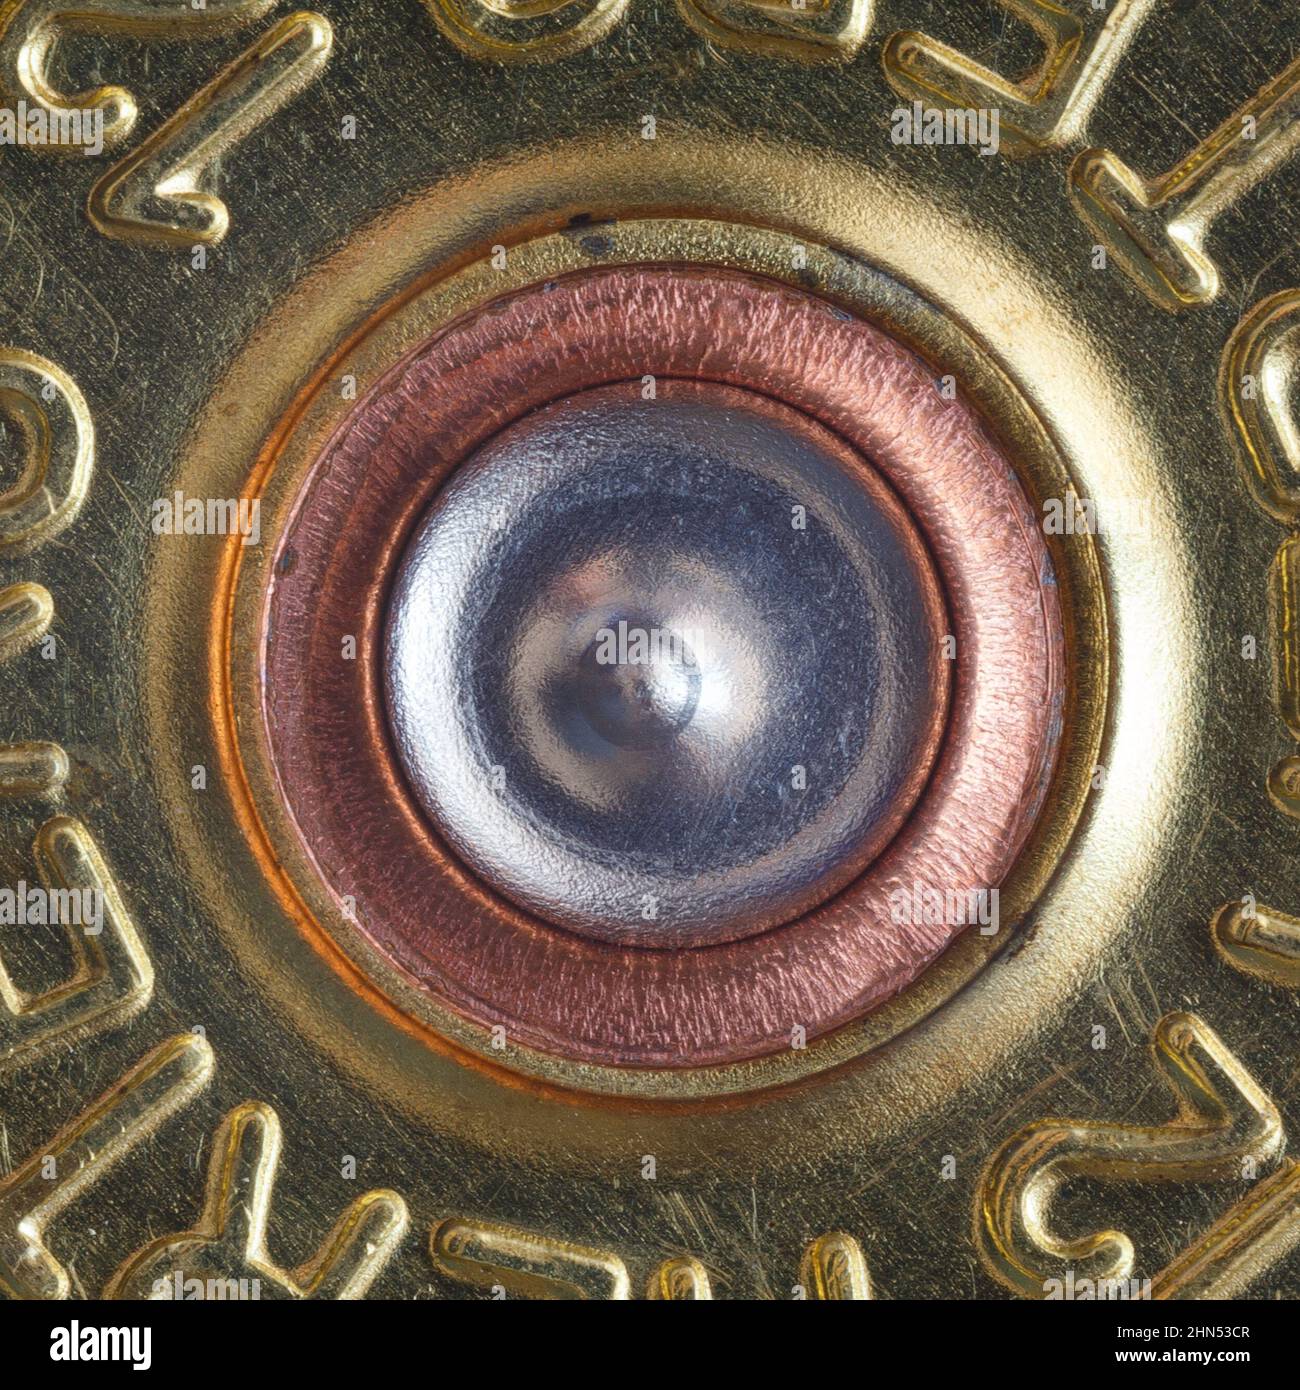 Un apprêt percé dans un étui de calibre 12 d'un fusil de chasse. Macrophotographie Banque D'Images